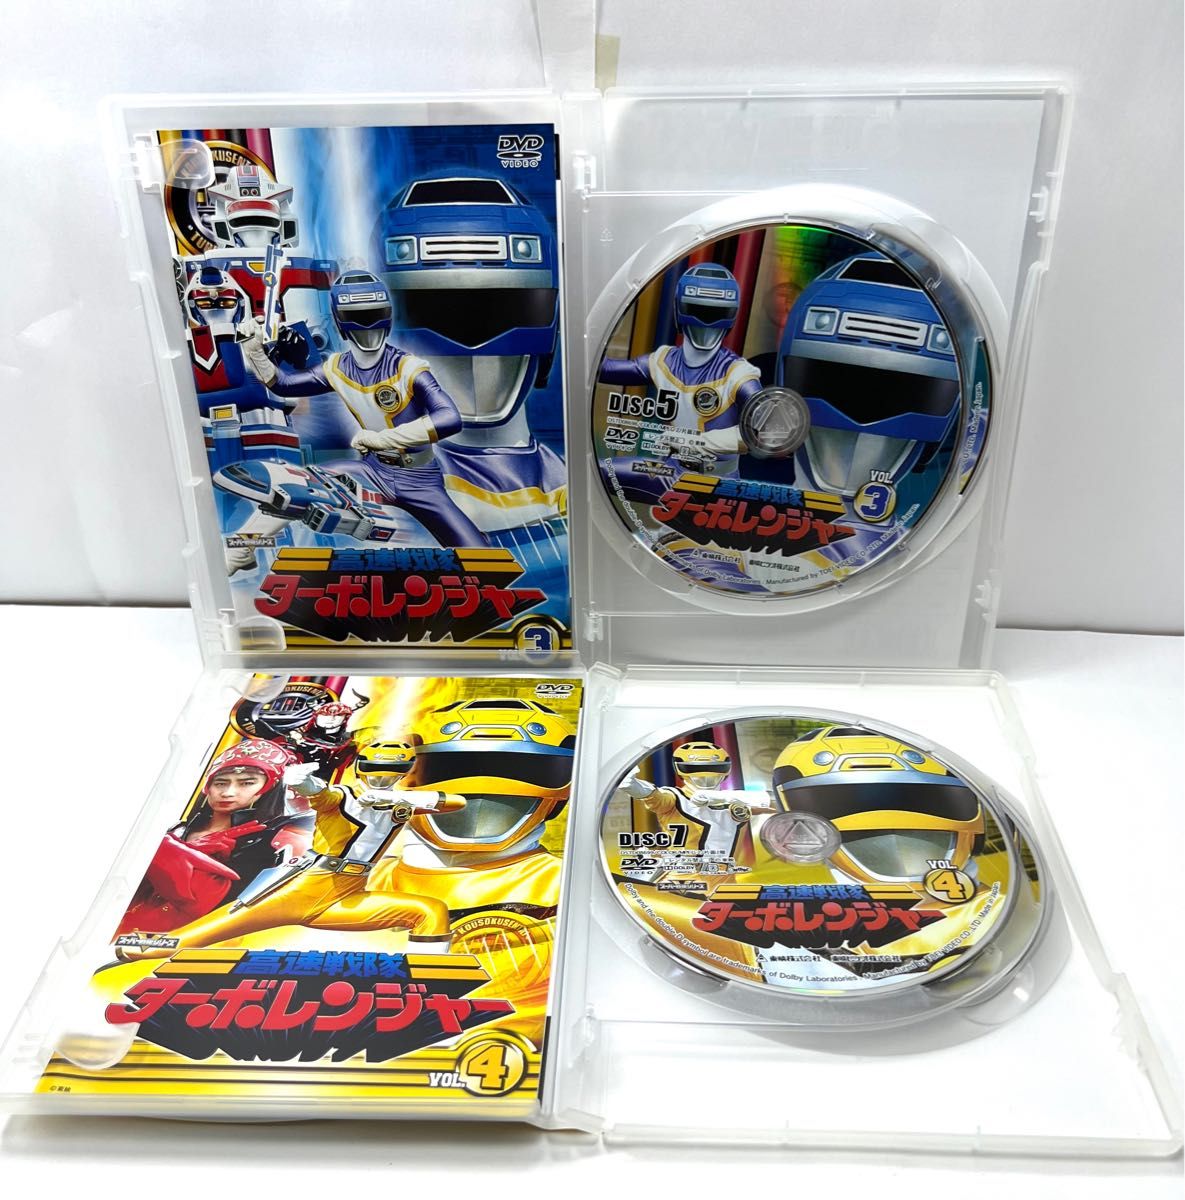 高速戦隊ターボレンジャー 全5巻 DVD セット